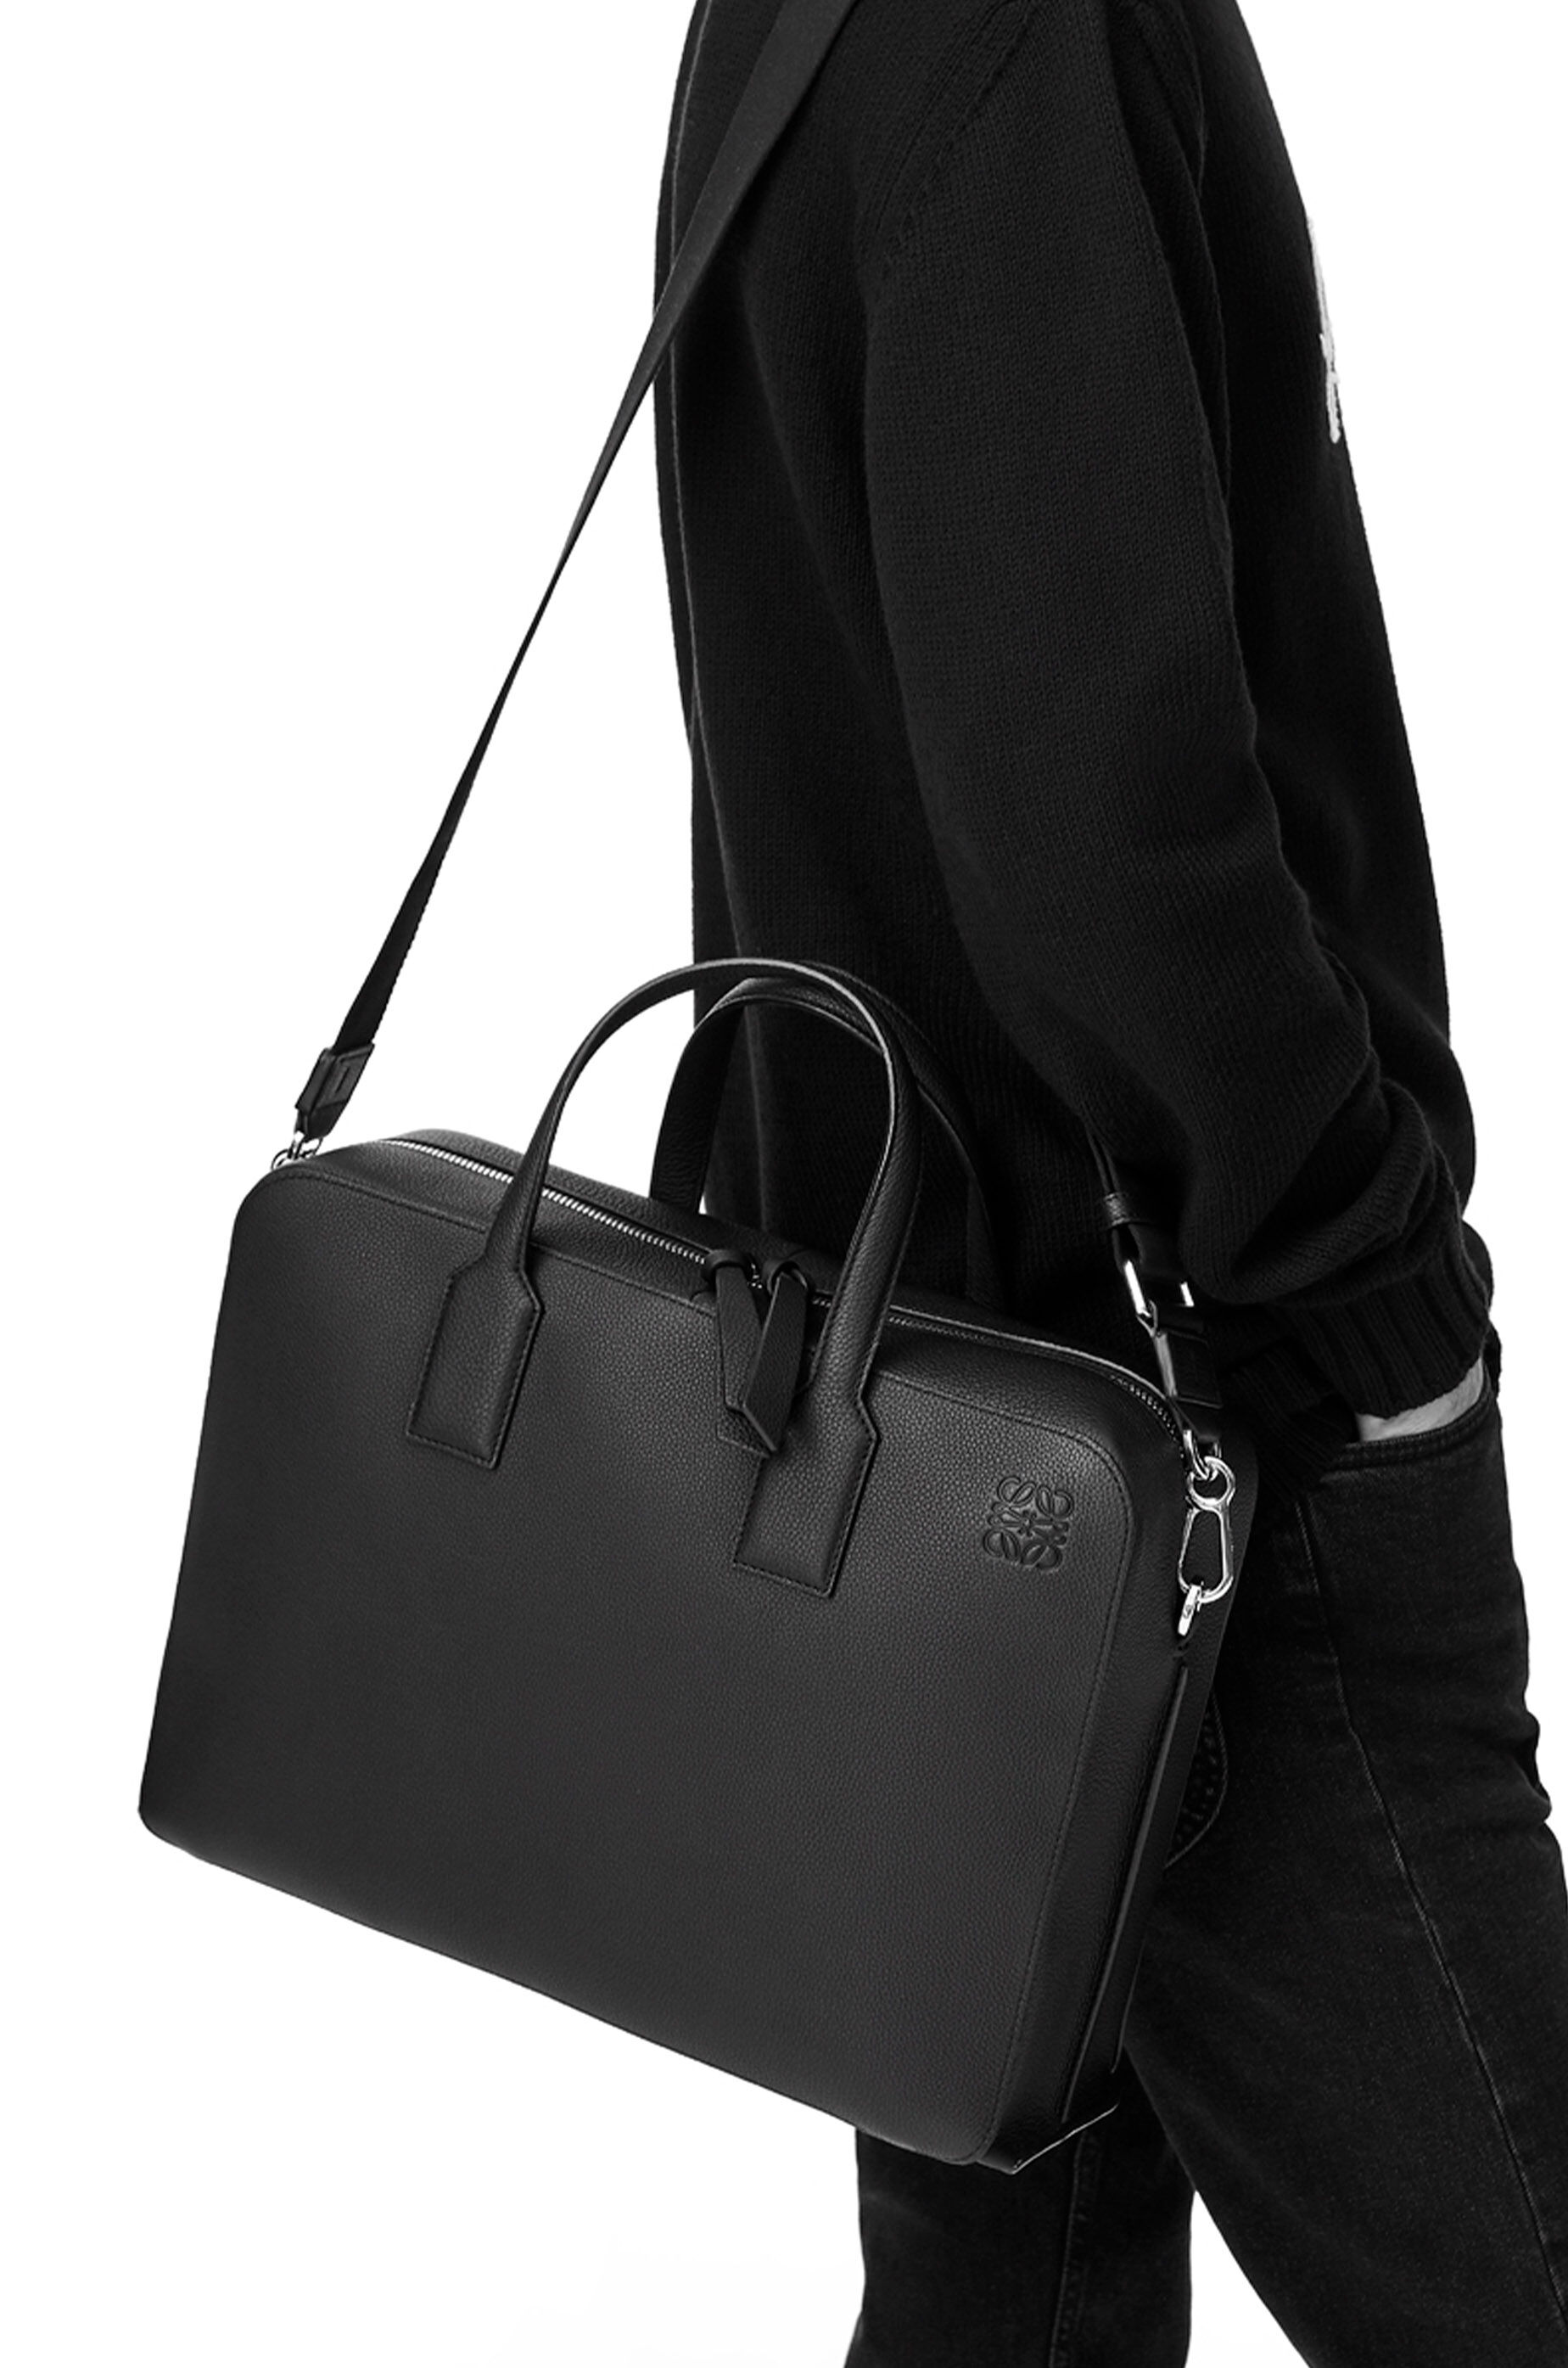 Luxury portfolio \u0026 briefcases for men